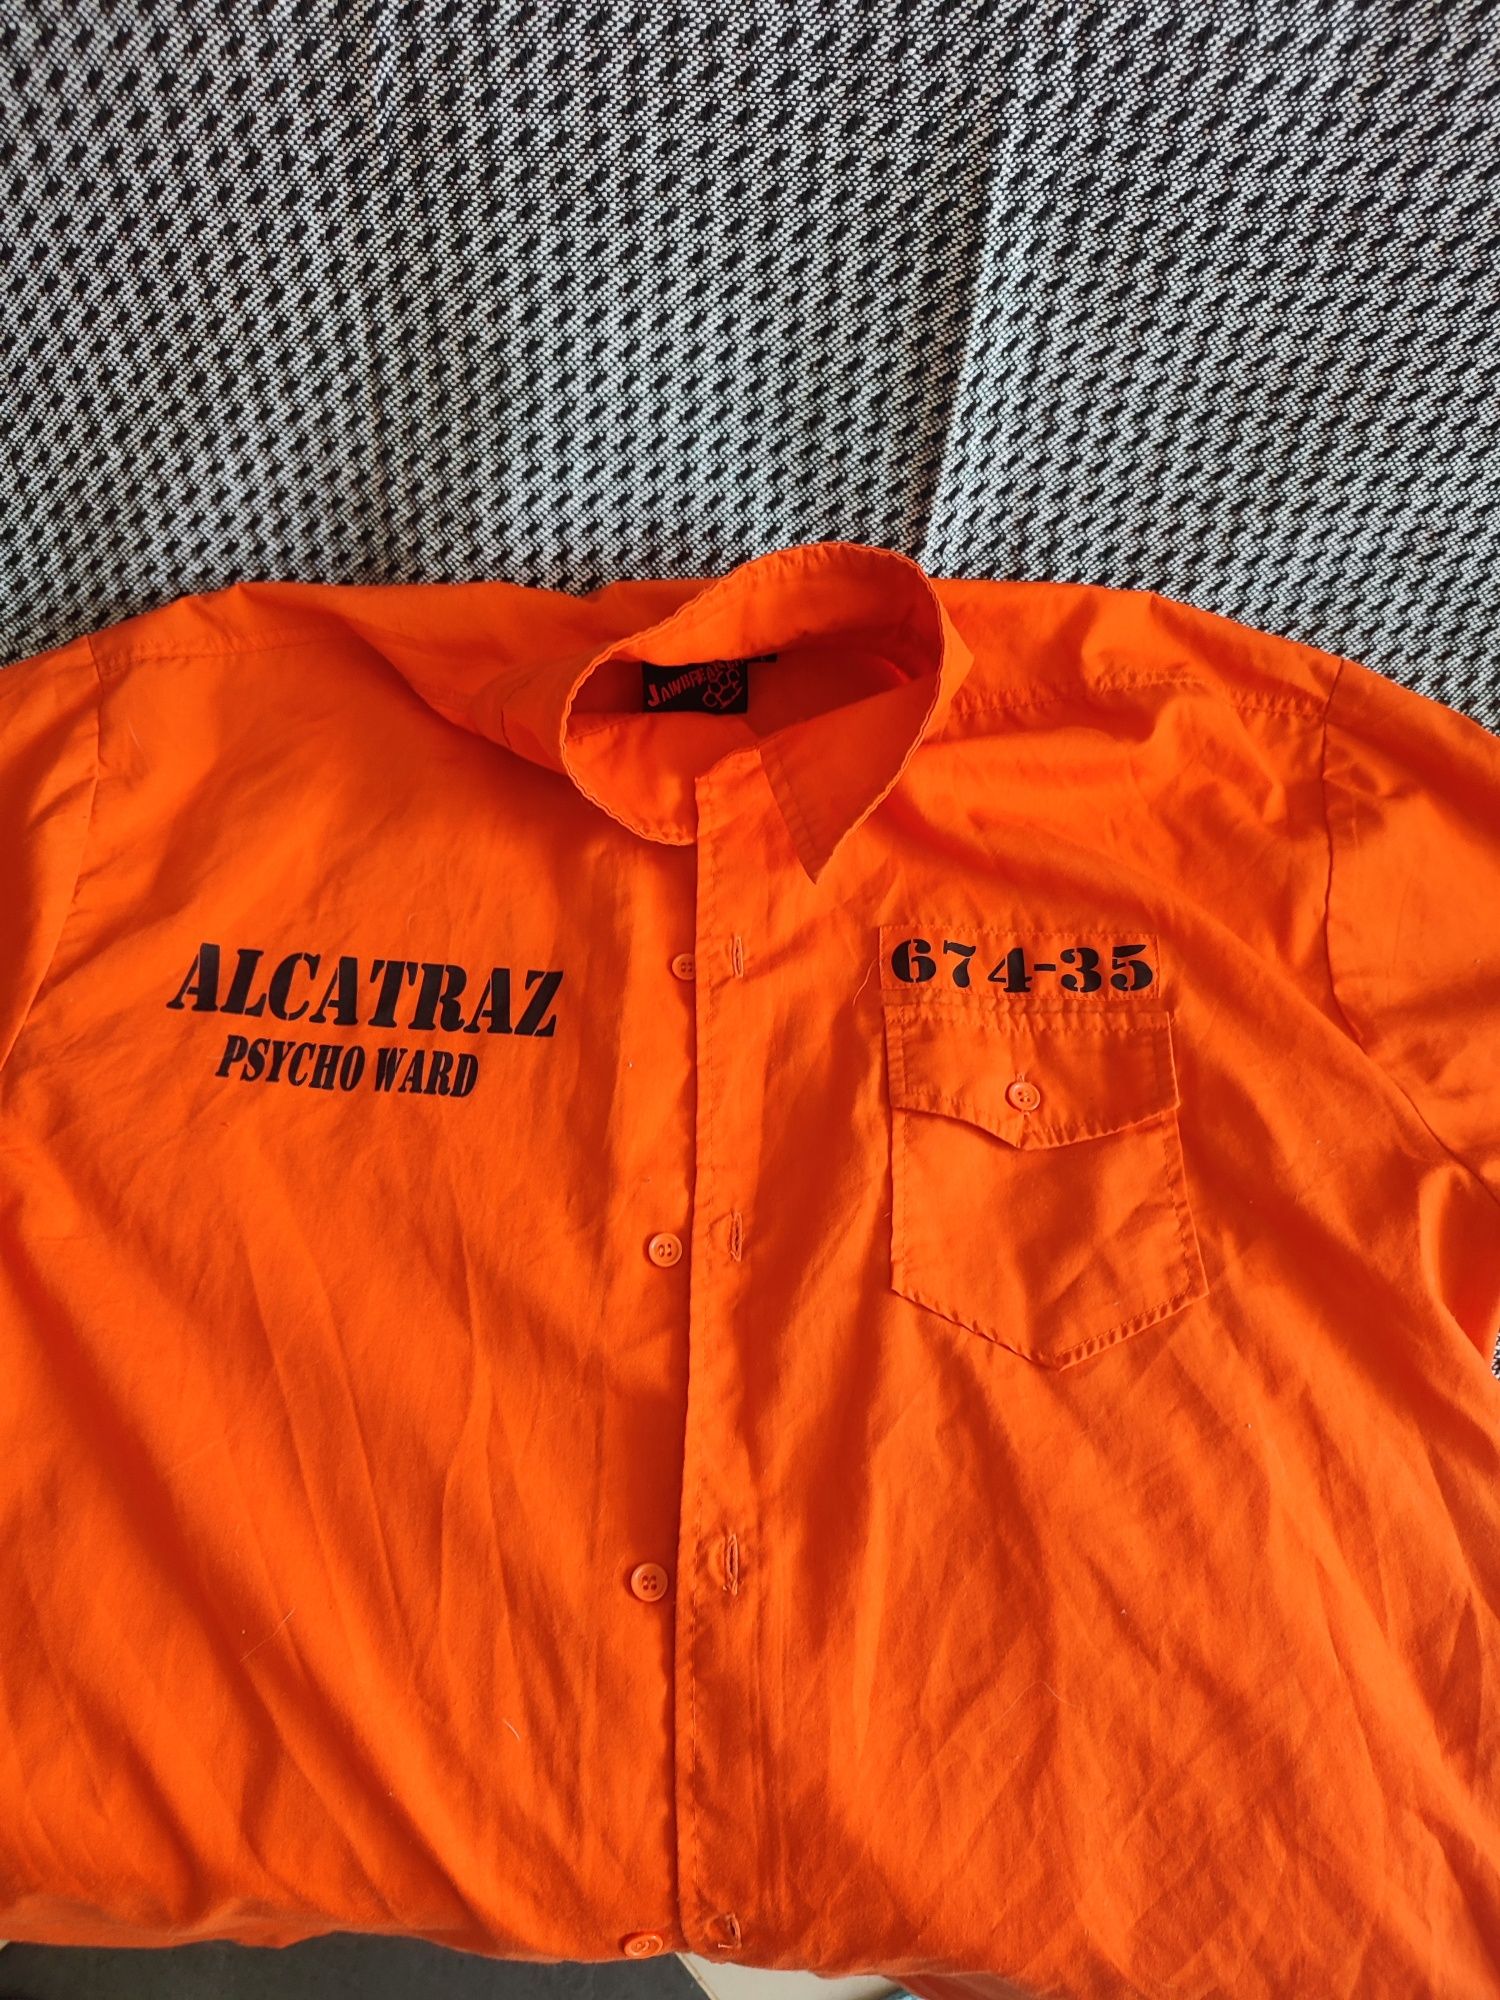 Рубашка Alcatraz psycho ward